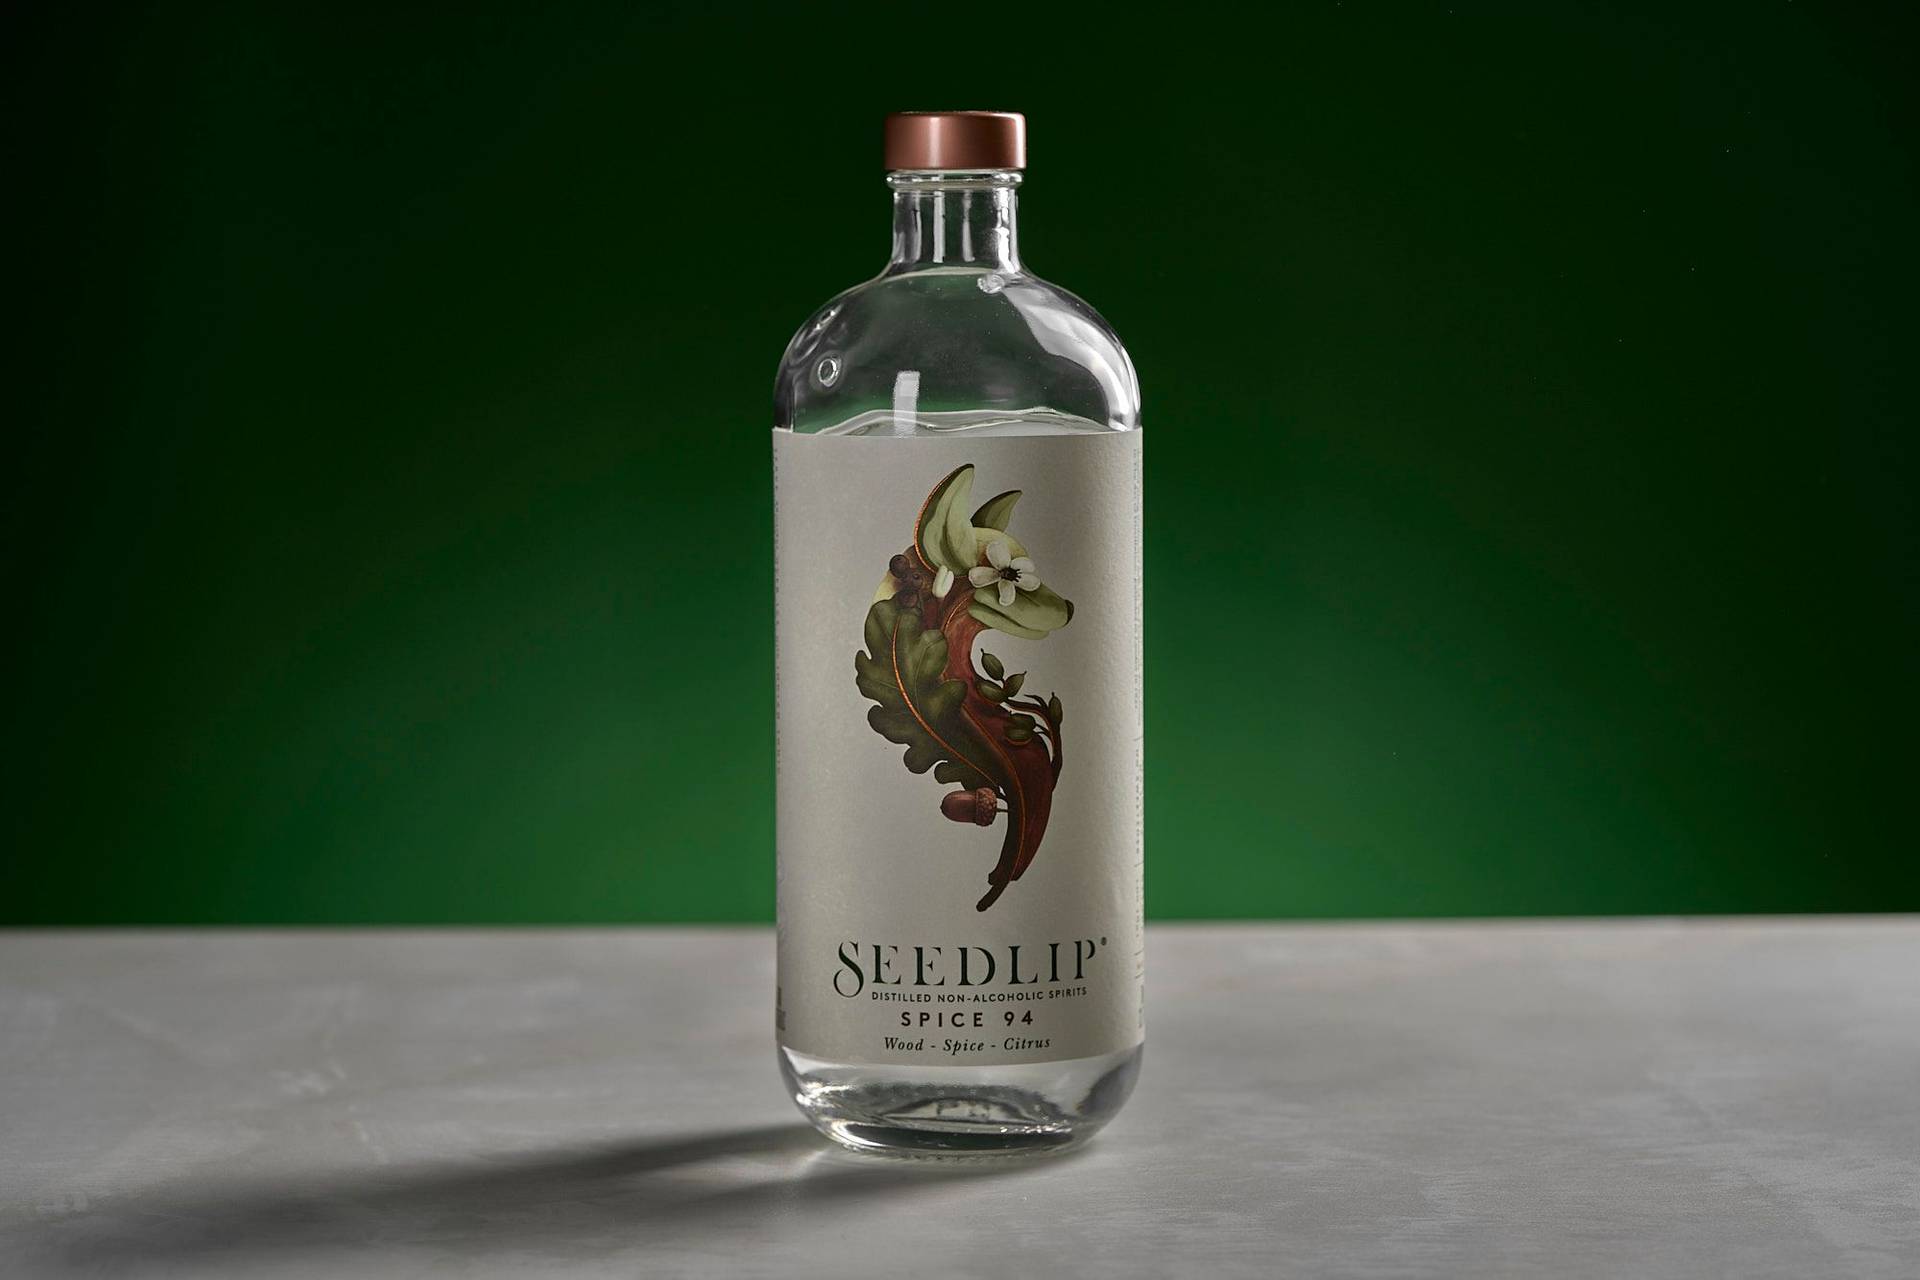 eine flasche alkoholfreies seedlip spice 94 auf weißem sapienstone top mit grünem hintergrund